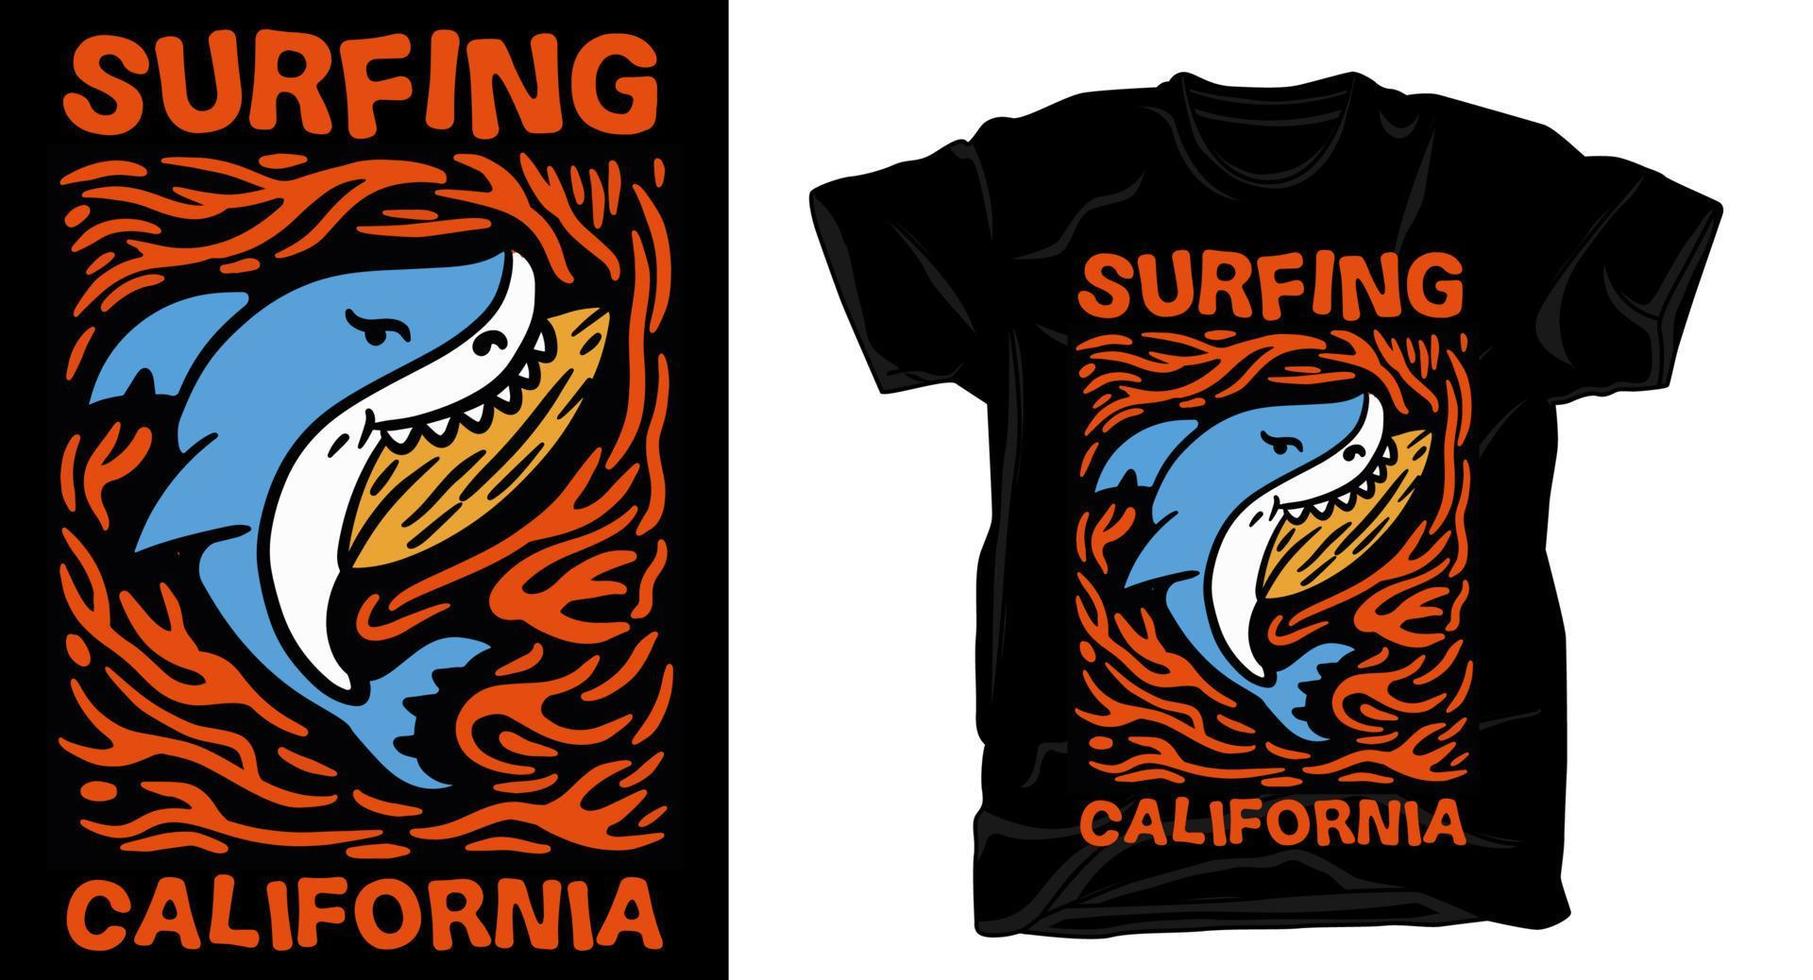 Shark surfboard illustration t-shirt design vector